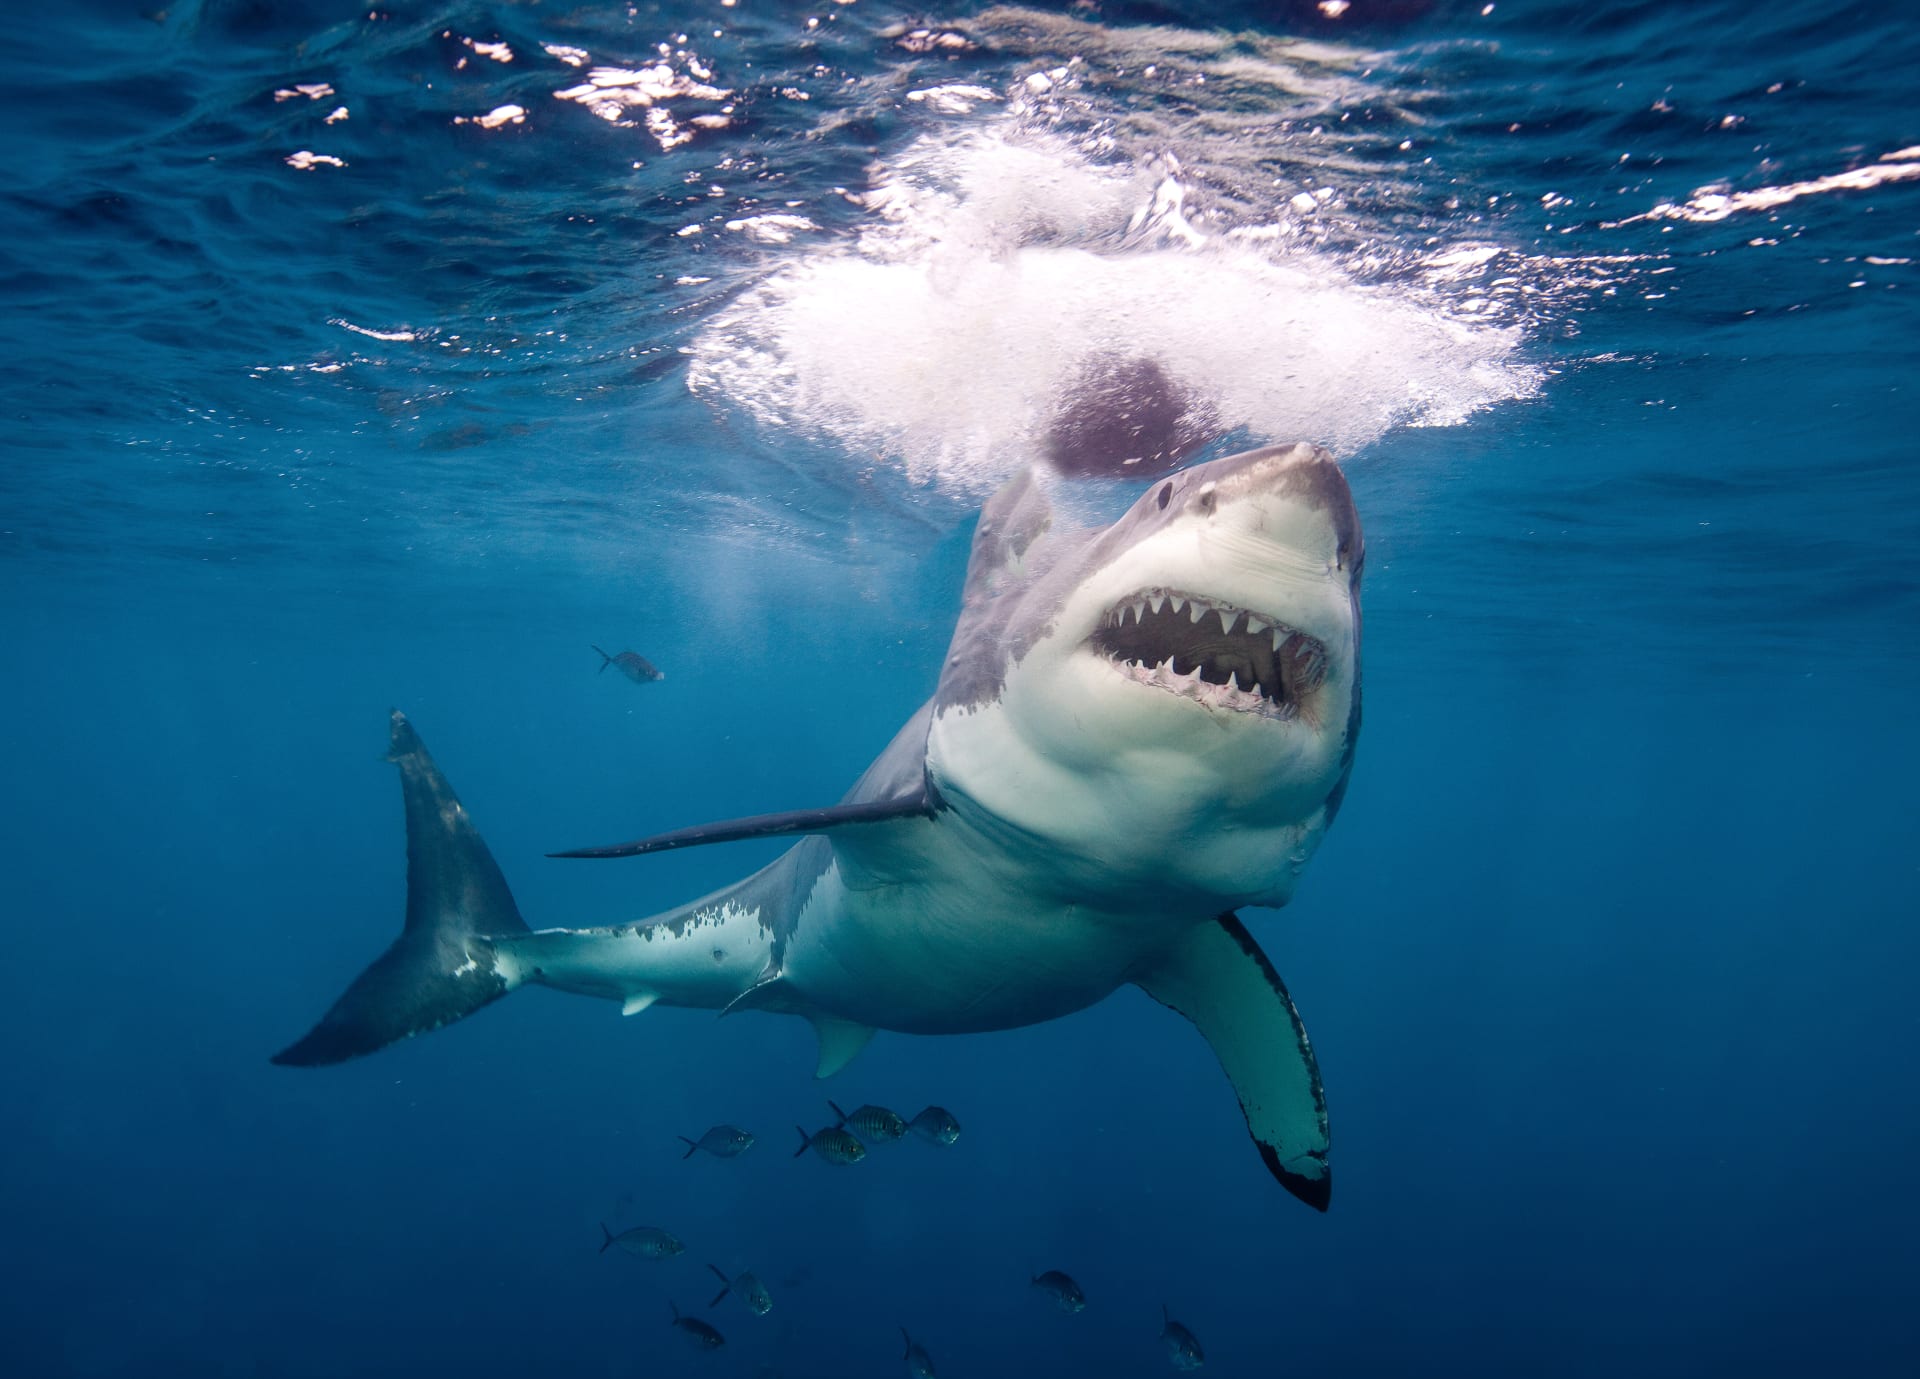 Senior žraloka, který se mu zakousl do lýtka, dle svých slov udeřil do hlavy. (Ilustrační foto)